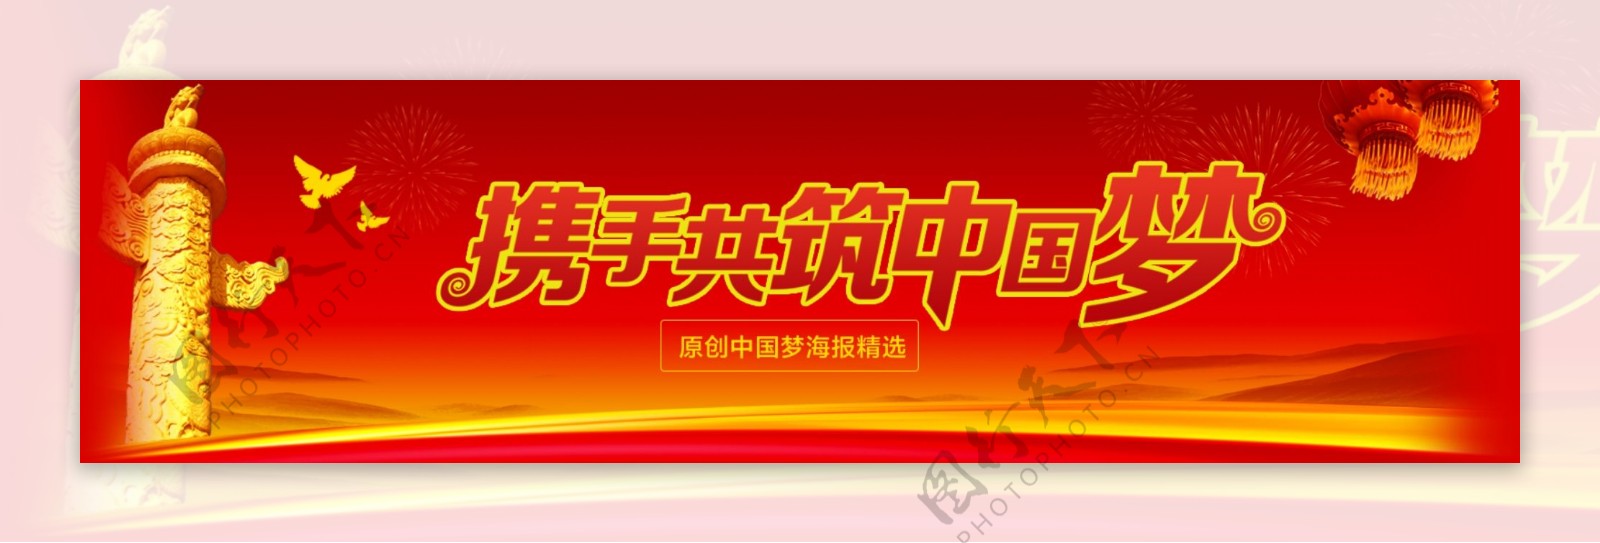 红色中国梦简约海报设计